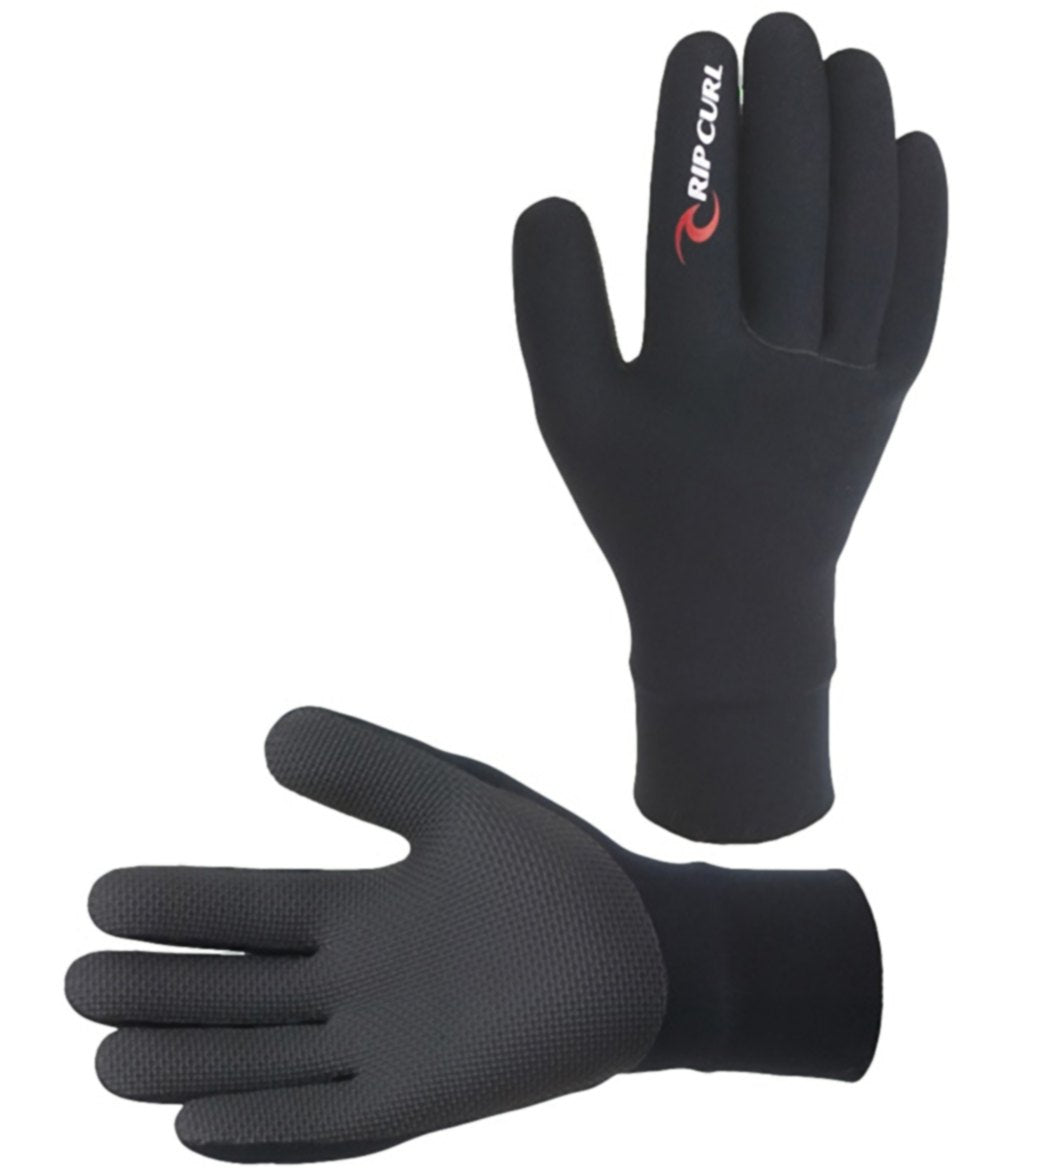 Rip Curl, Rip Curl Classic 5 Finger Glove-Unisex Black